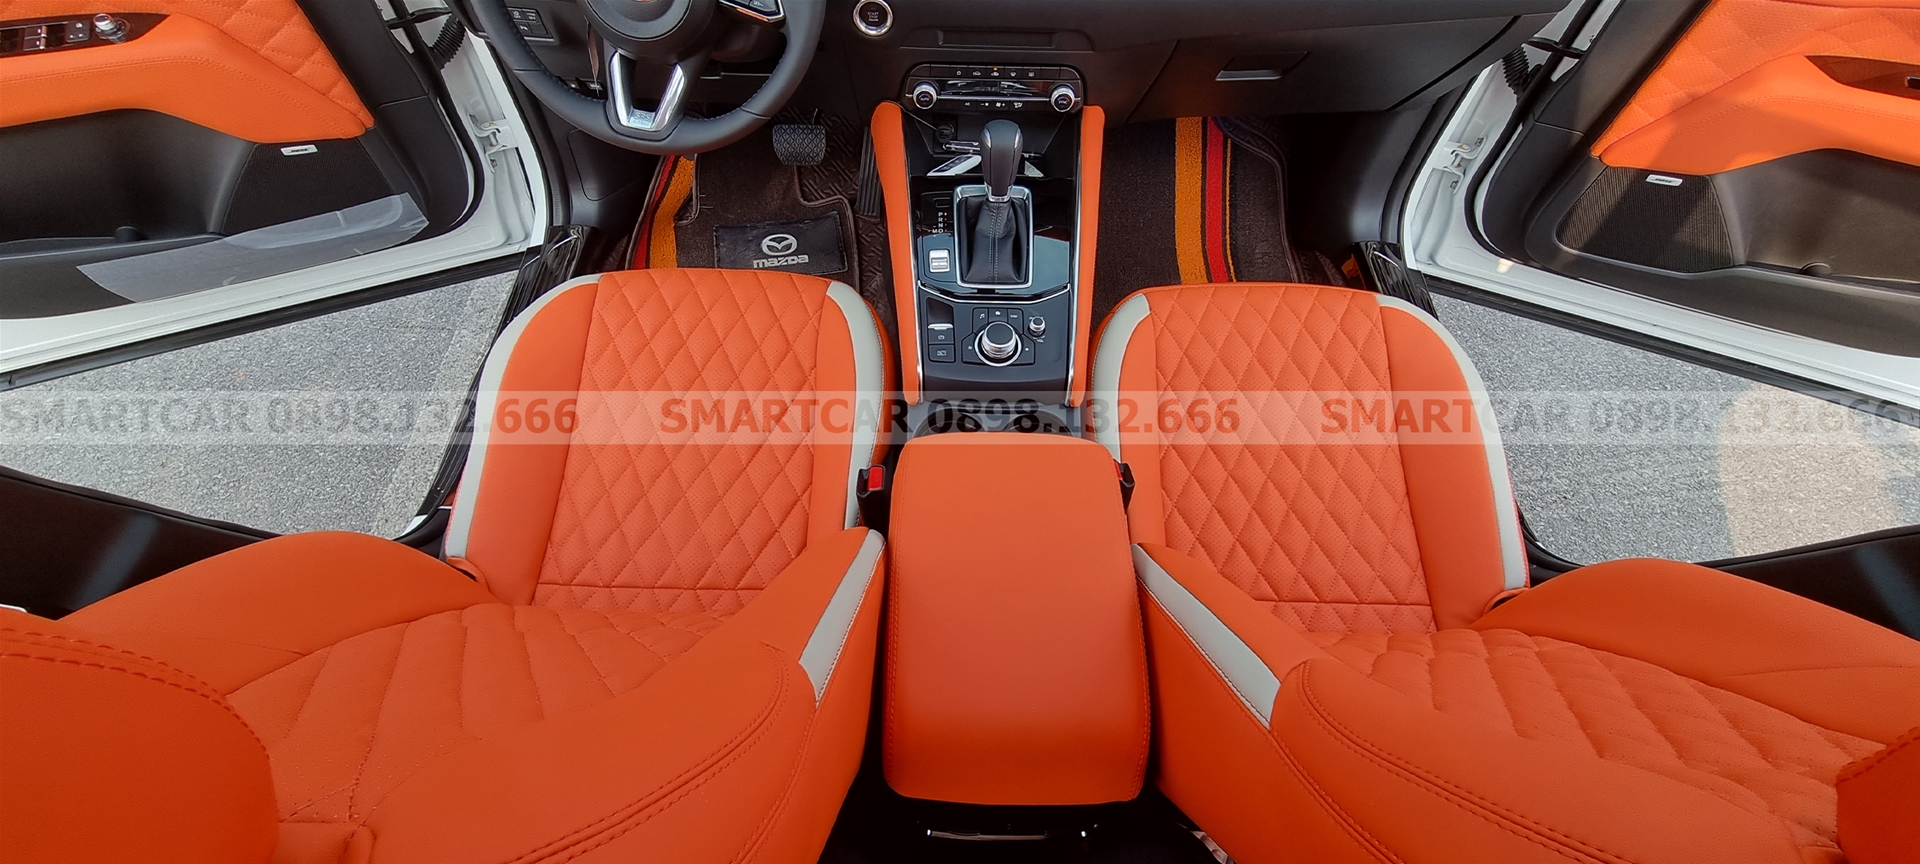 Đổi màu nội thất Mazda CX5 cam Hermes - Hình 1